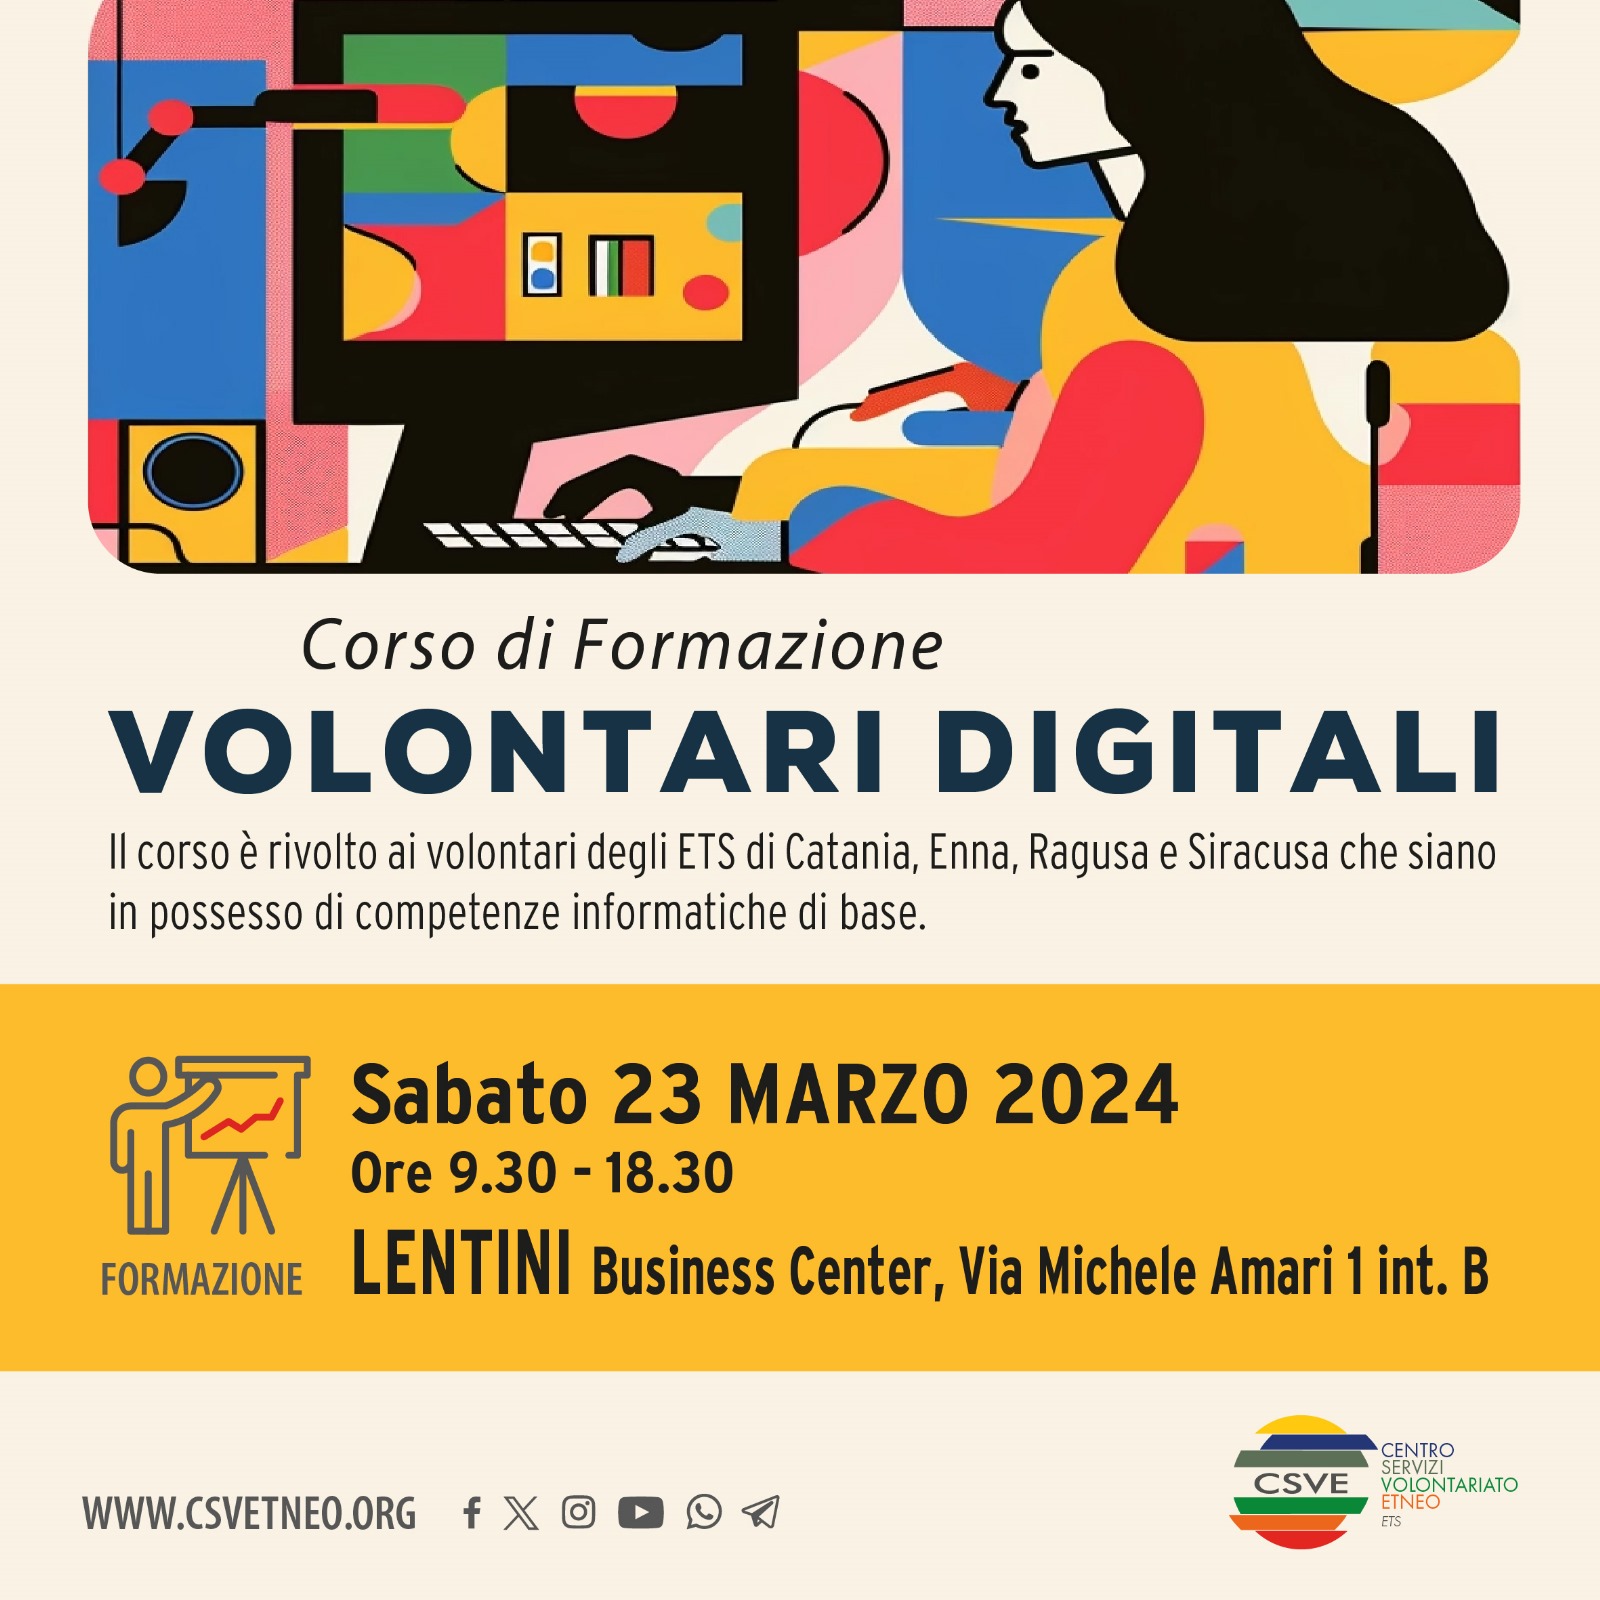 Volontari digitali: Corso di formazione a Lentini